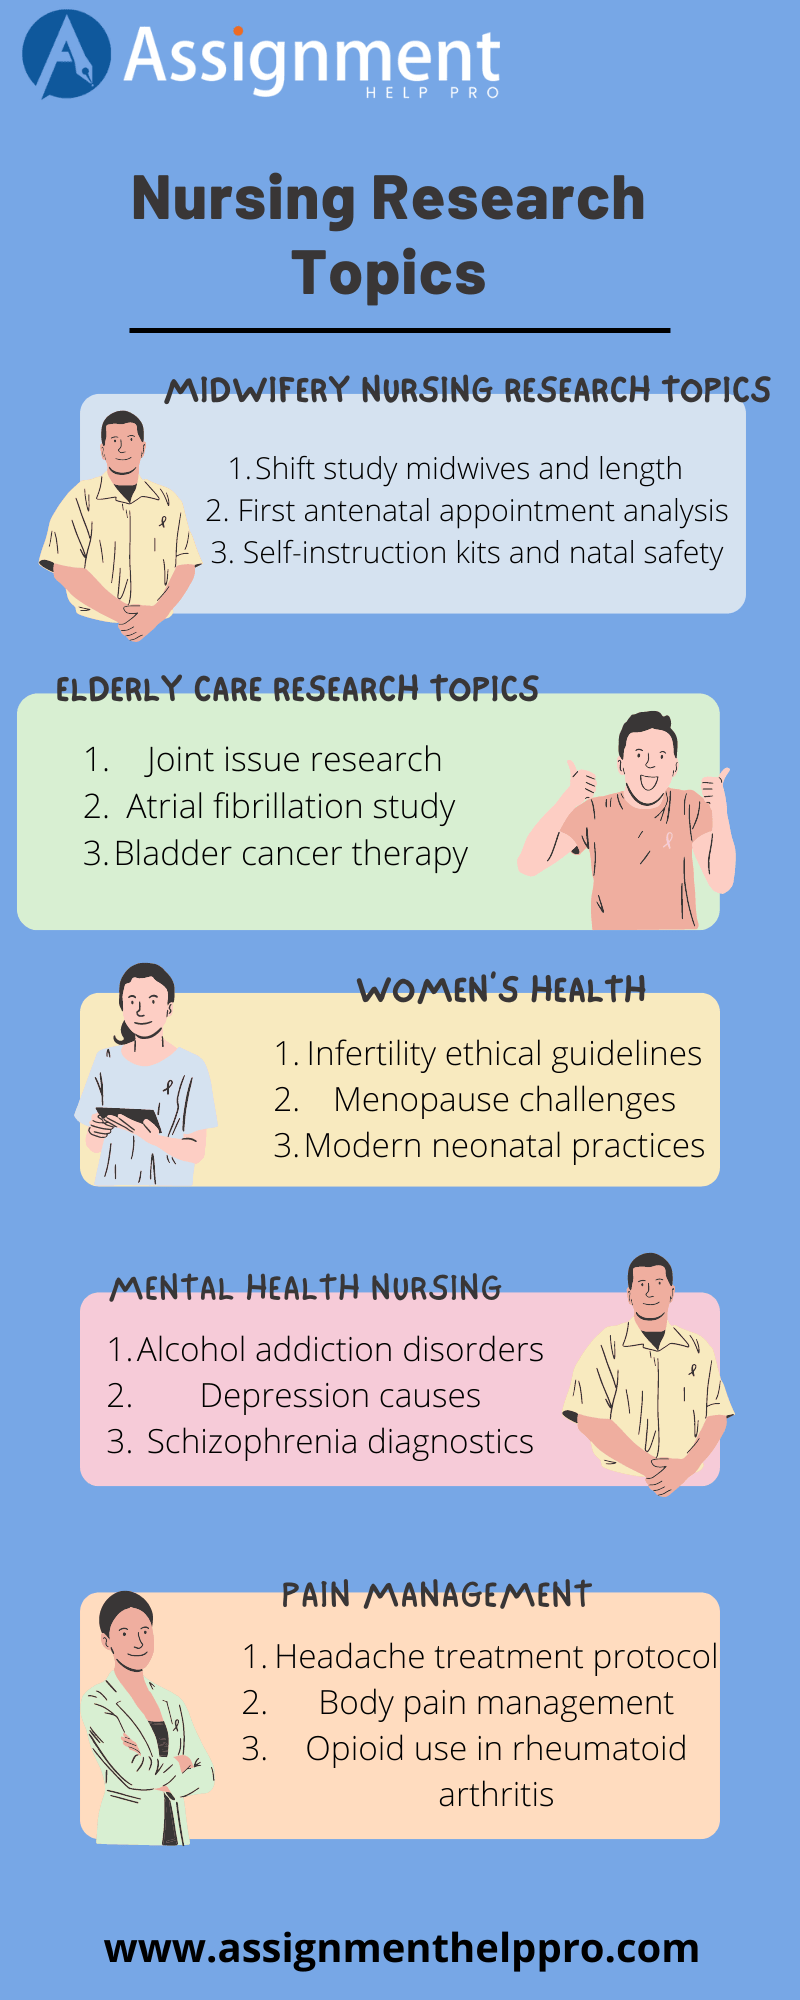 health paper topics